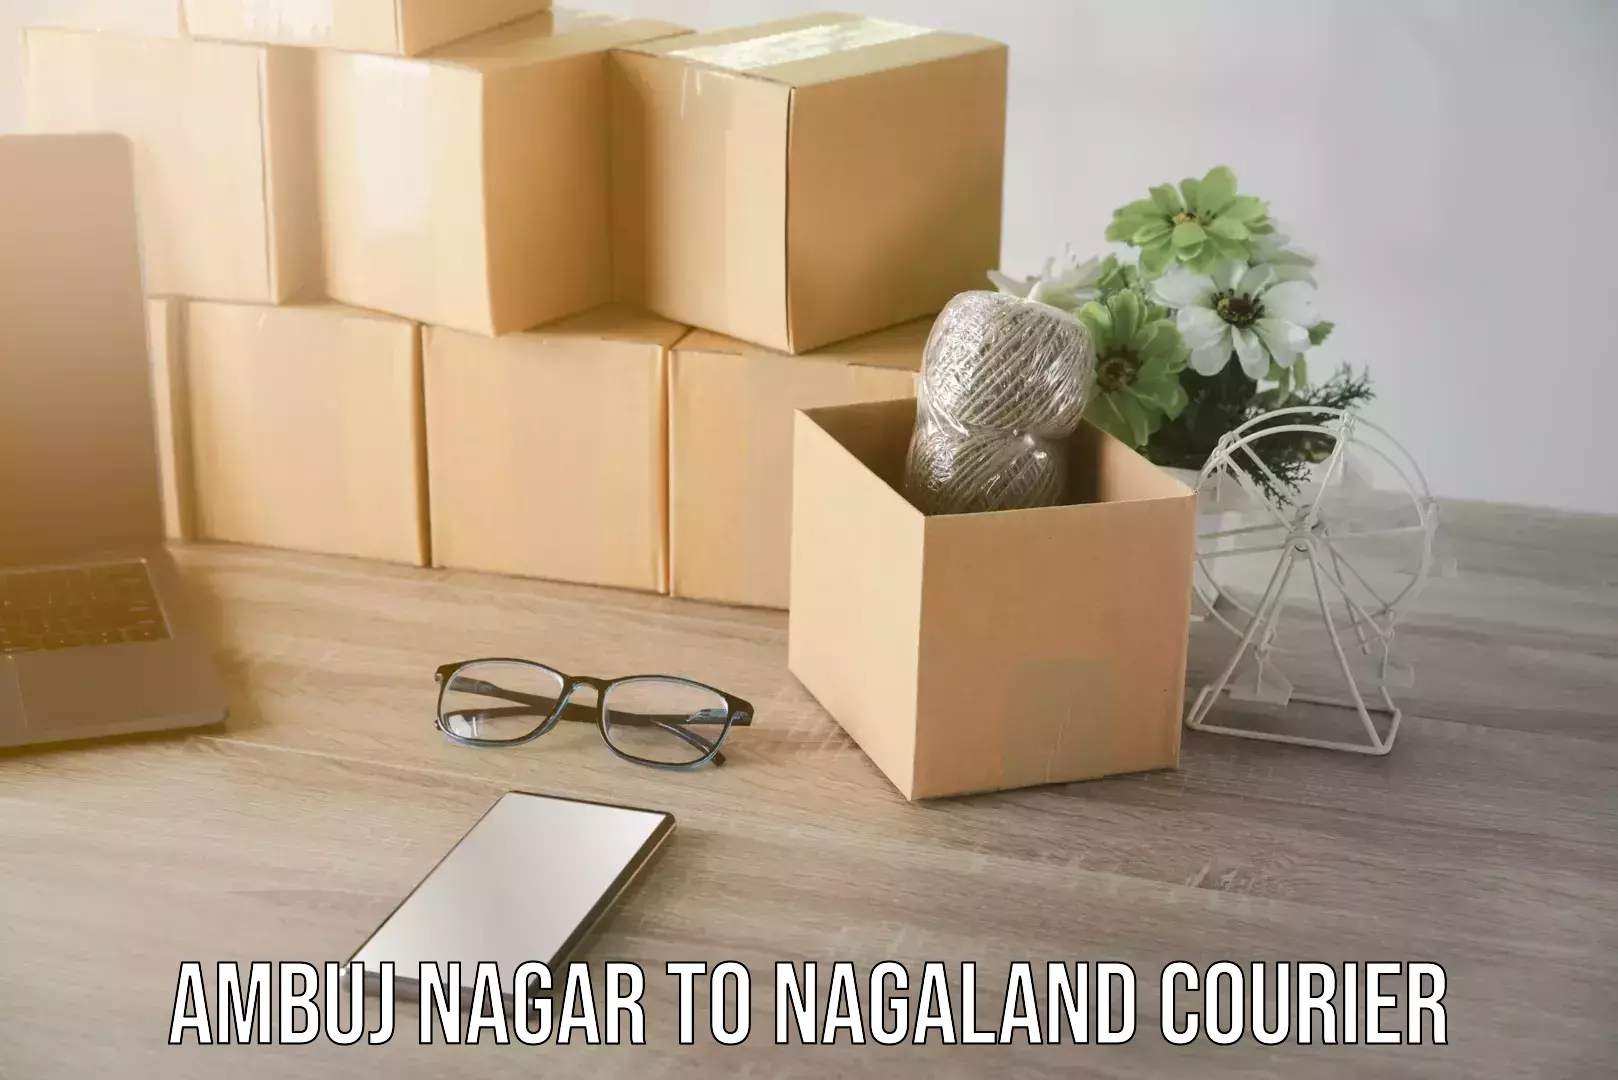 Holiday shipping services Ambuj Nagar to Nagaland